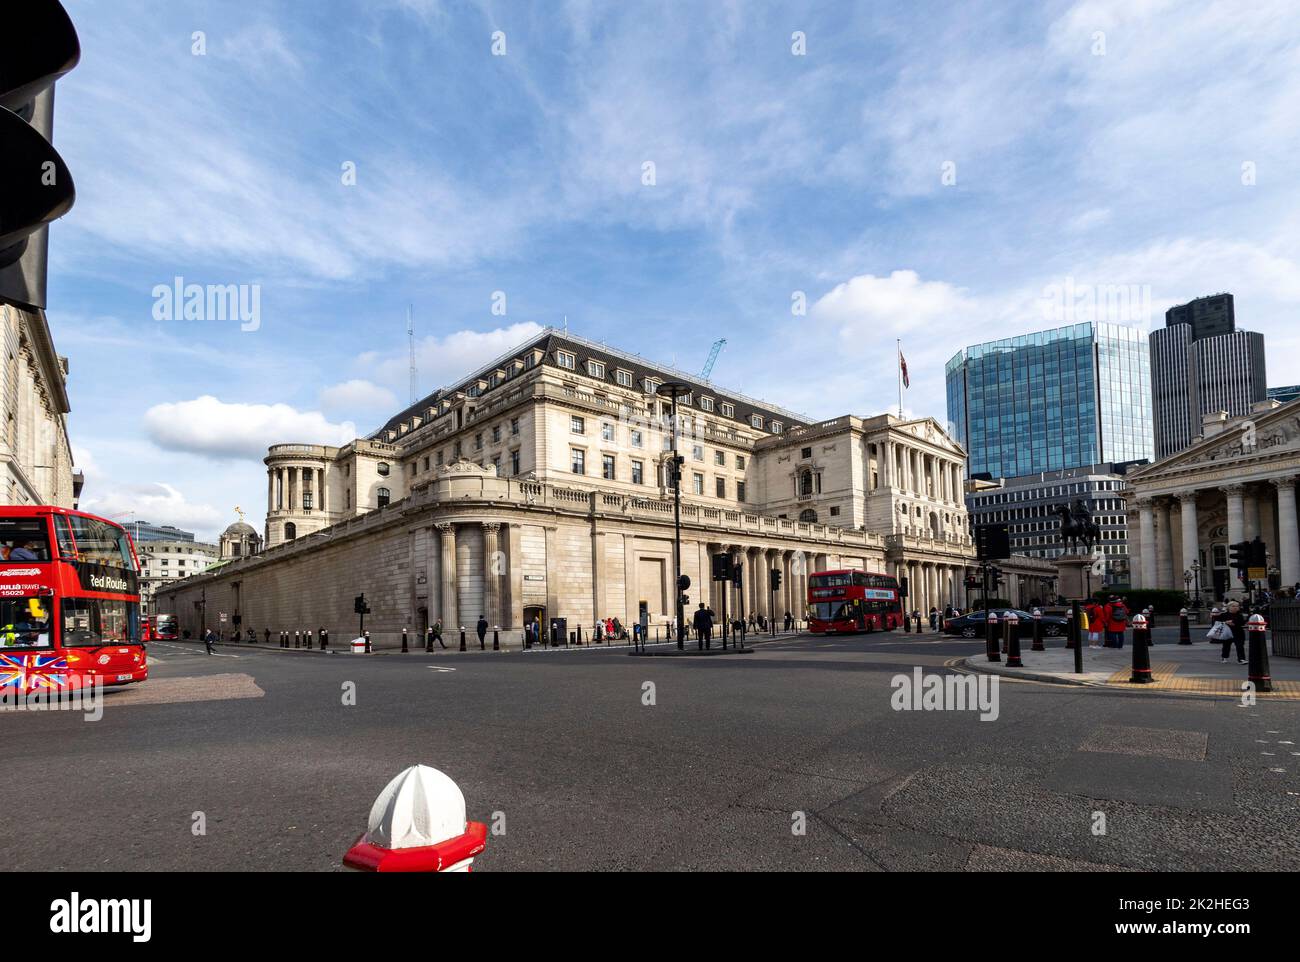 pic montre: Les taux de base sur le chemin de la hausse today22,9.22 Banque d'Angleterre dans la ville de Londres Photo de Gavin Rodgers/ Pixel8000 Banque D'Images